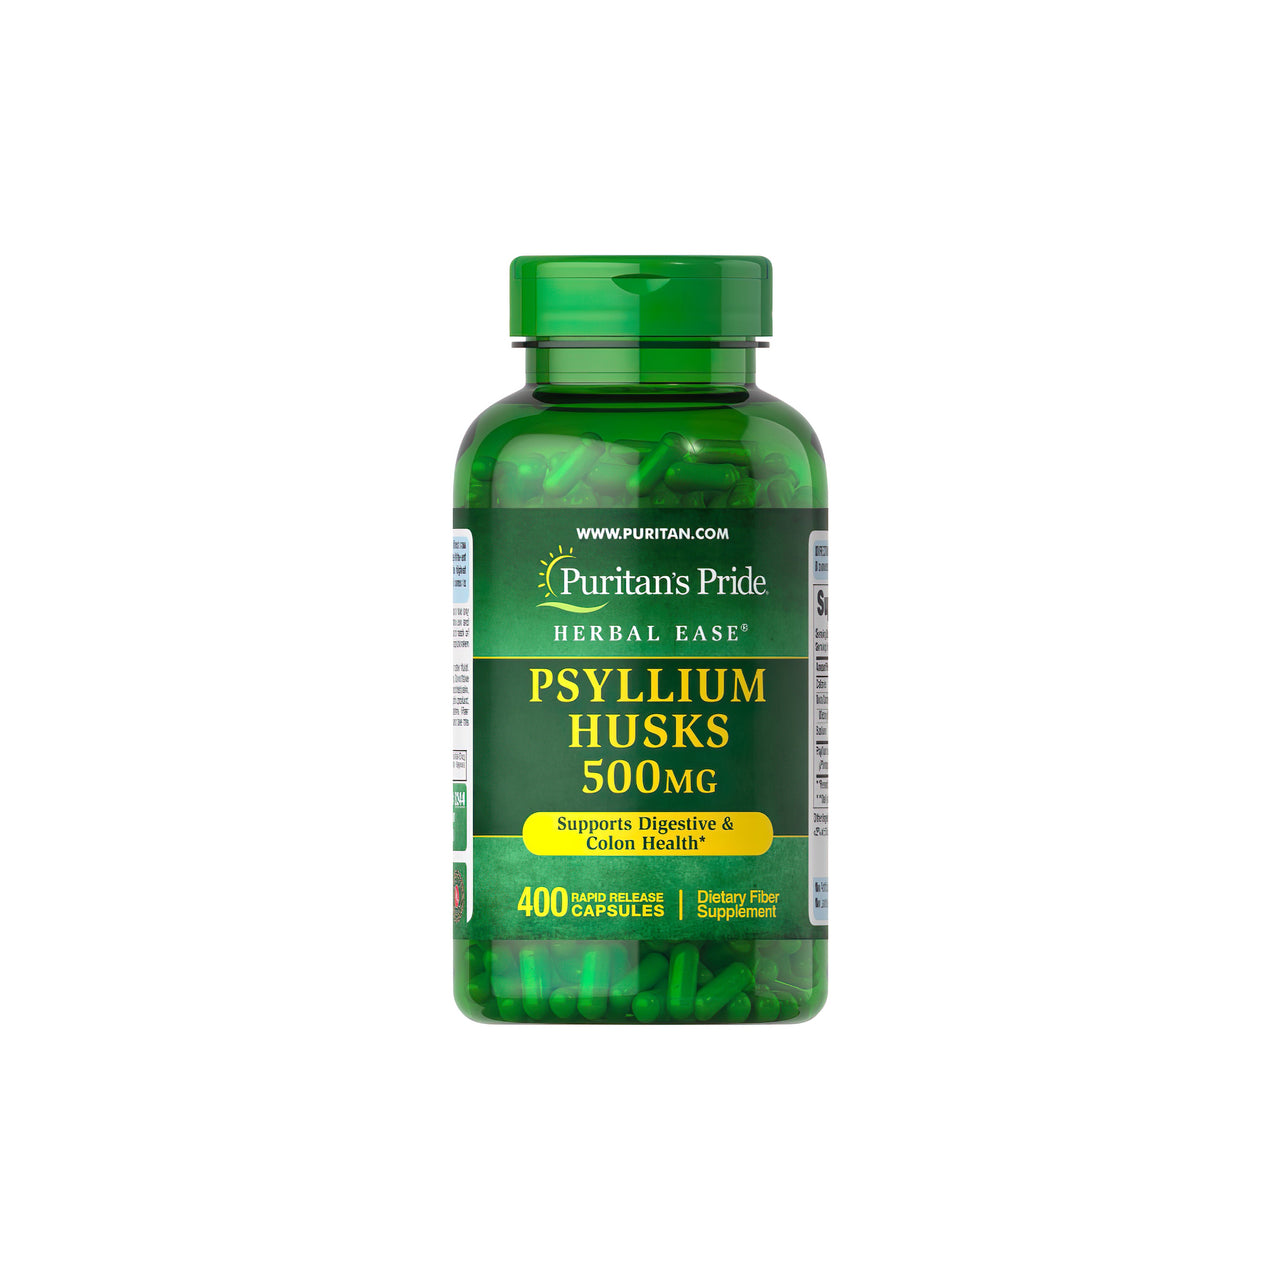 Eine Flasche Puritan's Pride Psyllium Husks 500 mg 400 Rapid Release Capsules, bekannt für ihren Gehalt an löslichen Ballaststoffen, die die Gesundheit von Verdauung und Darm unterstützen.